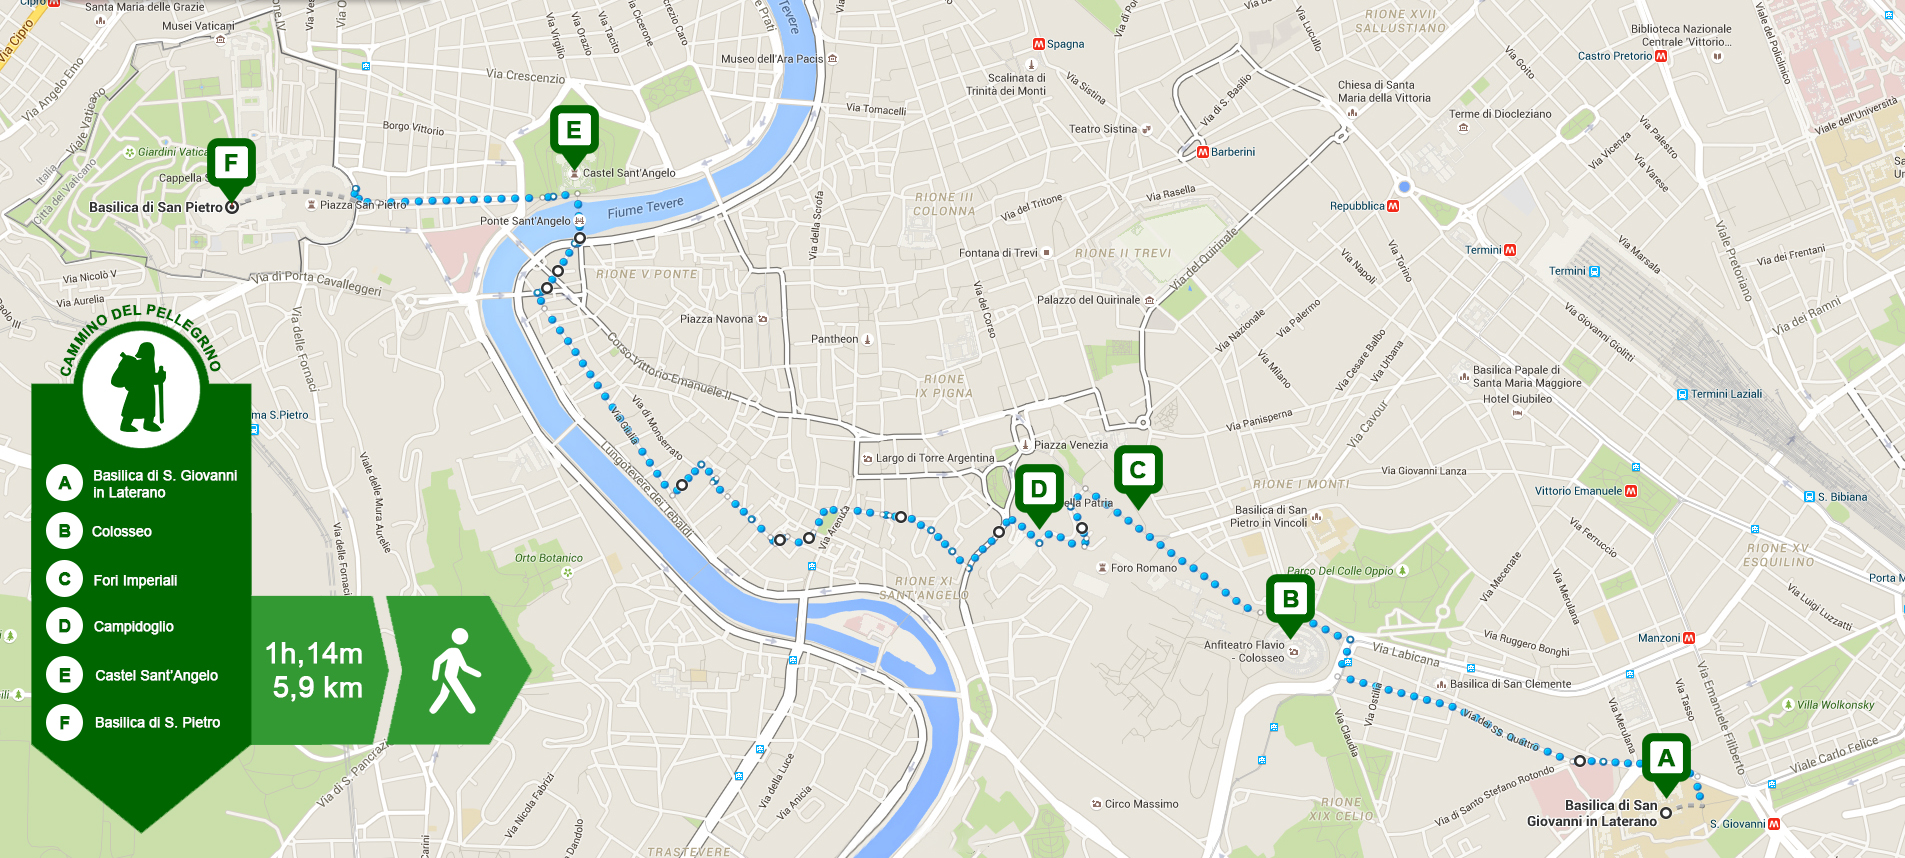 Il Cammino del Pellegrino con i suoi principali punti di interesse: 5,9 km da percorrere rigorosamente a piedi